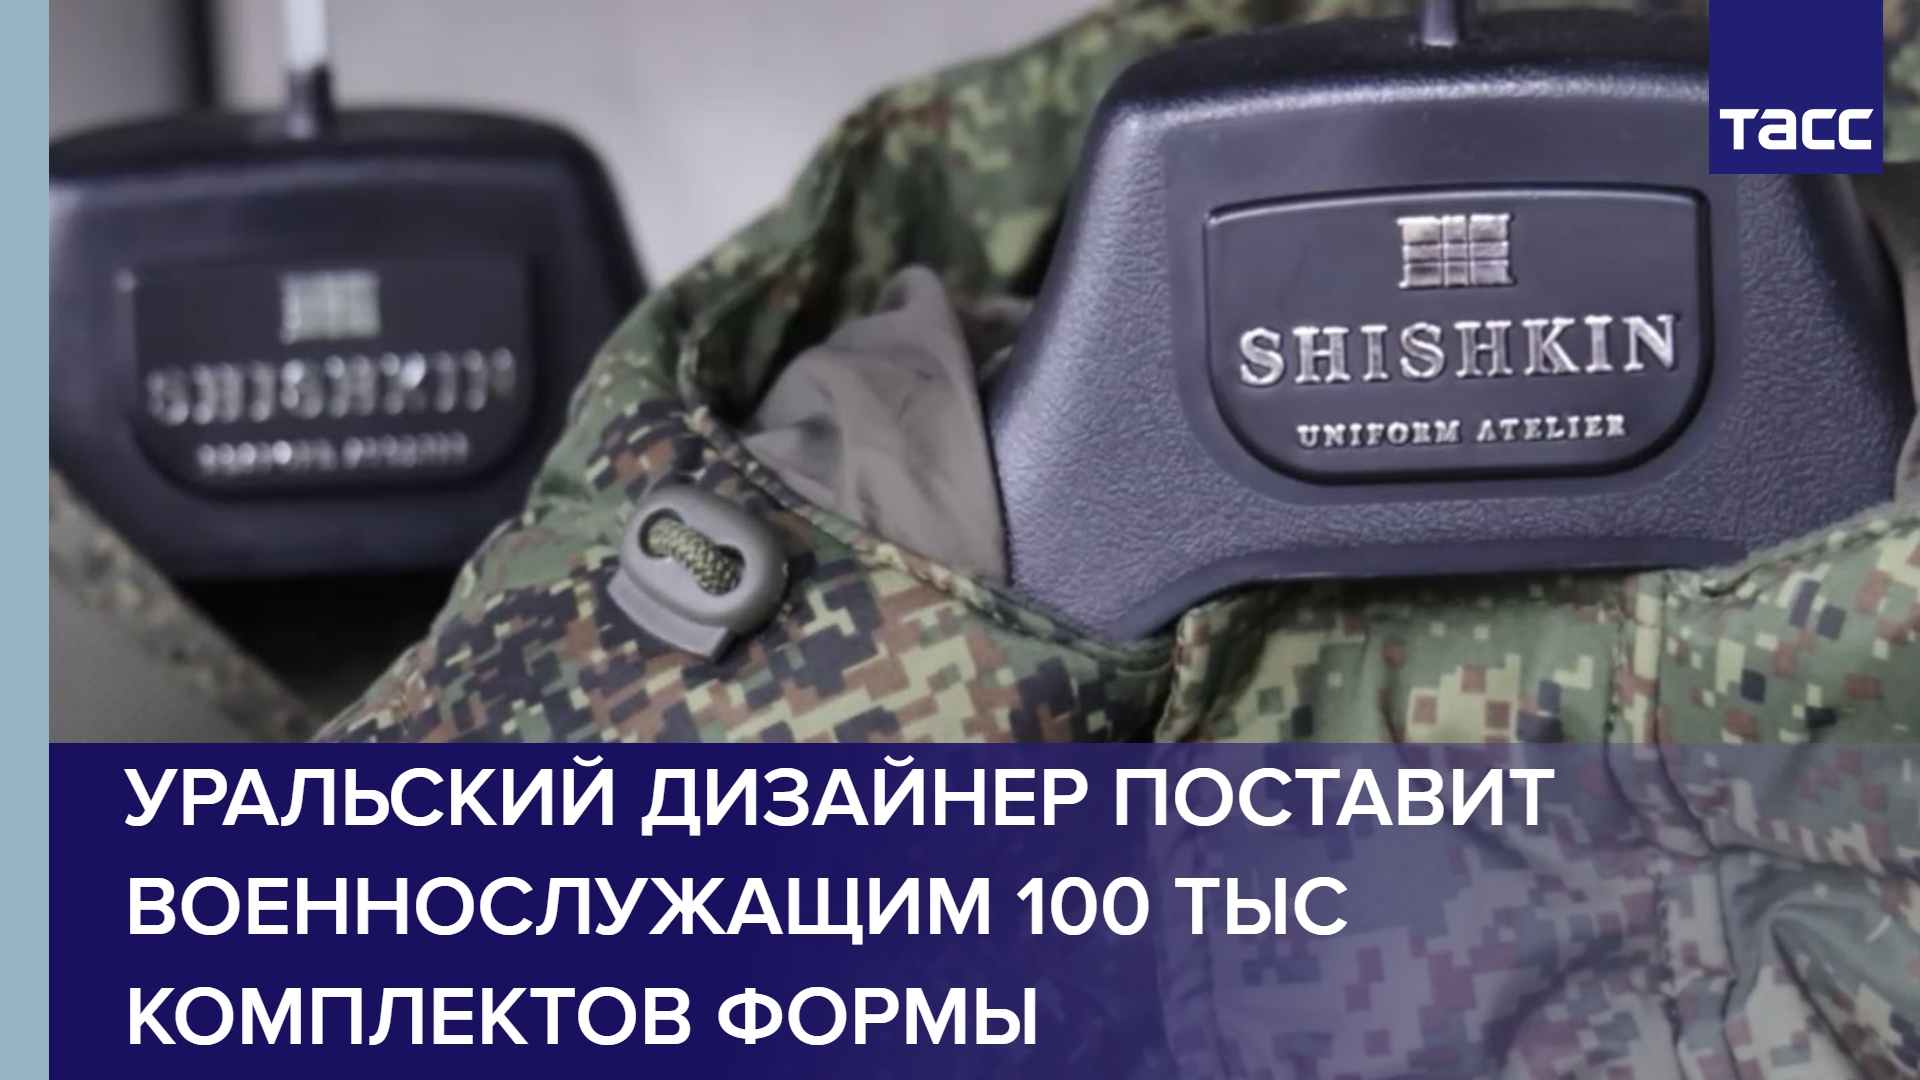 Уральский дизайнер поставит военнослужащим 100 тыс комплектов формы